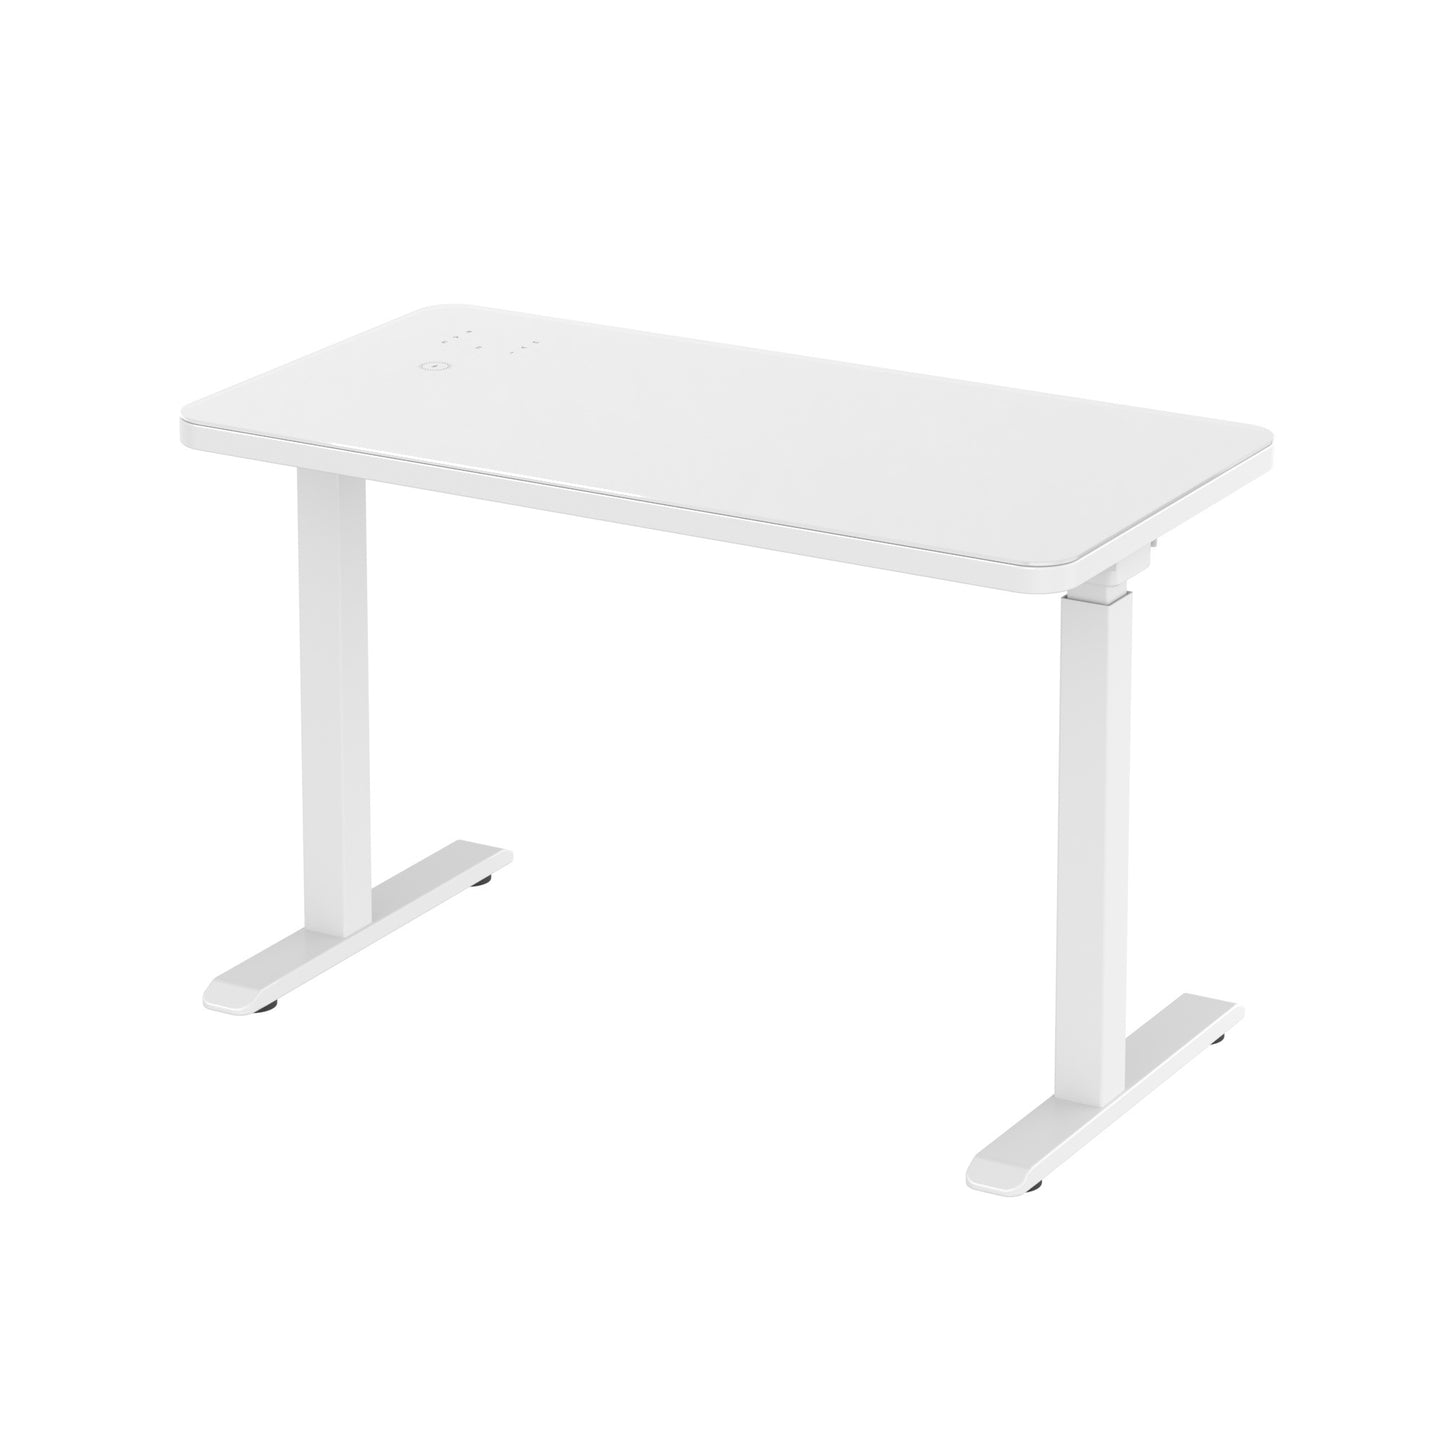 Glass tabletop standing desk White